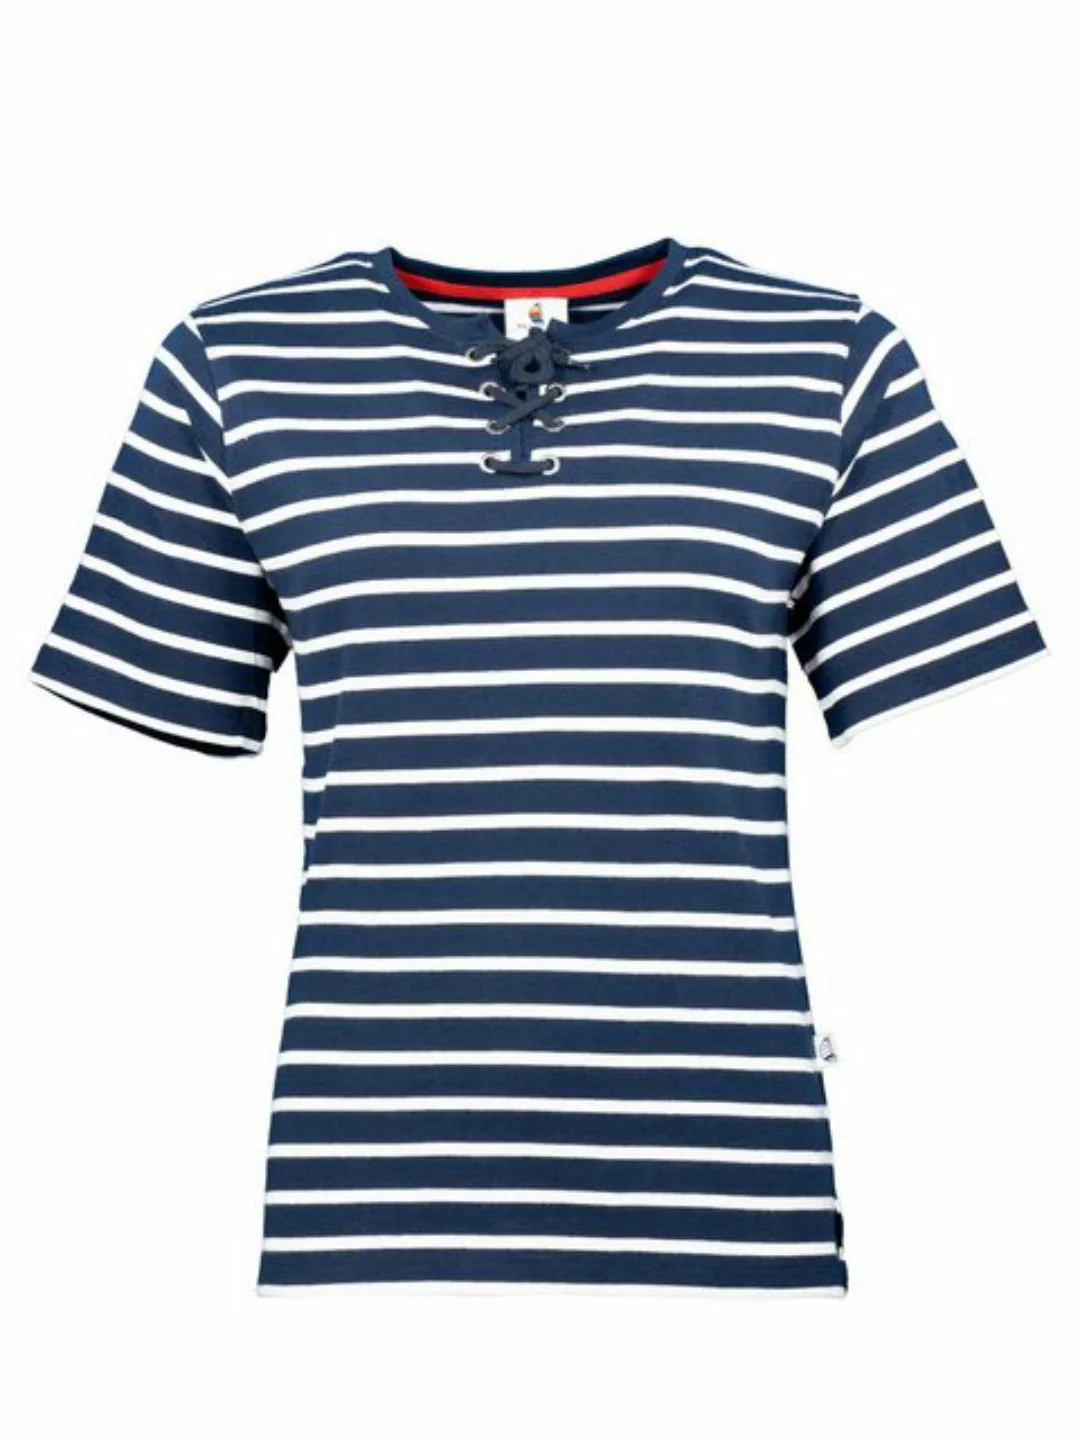 Wind sportswear T-Shirt Damen gestreift, maritim, bretonisch günstig online kaufen